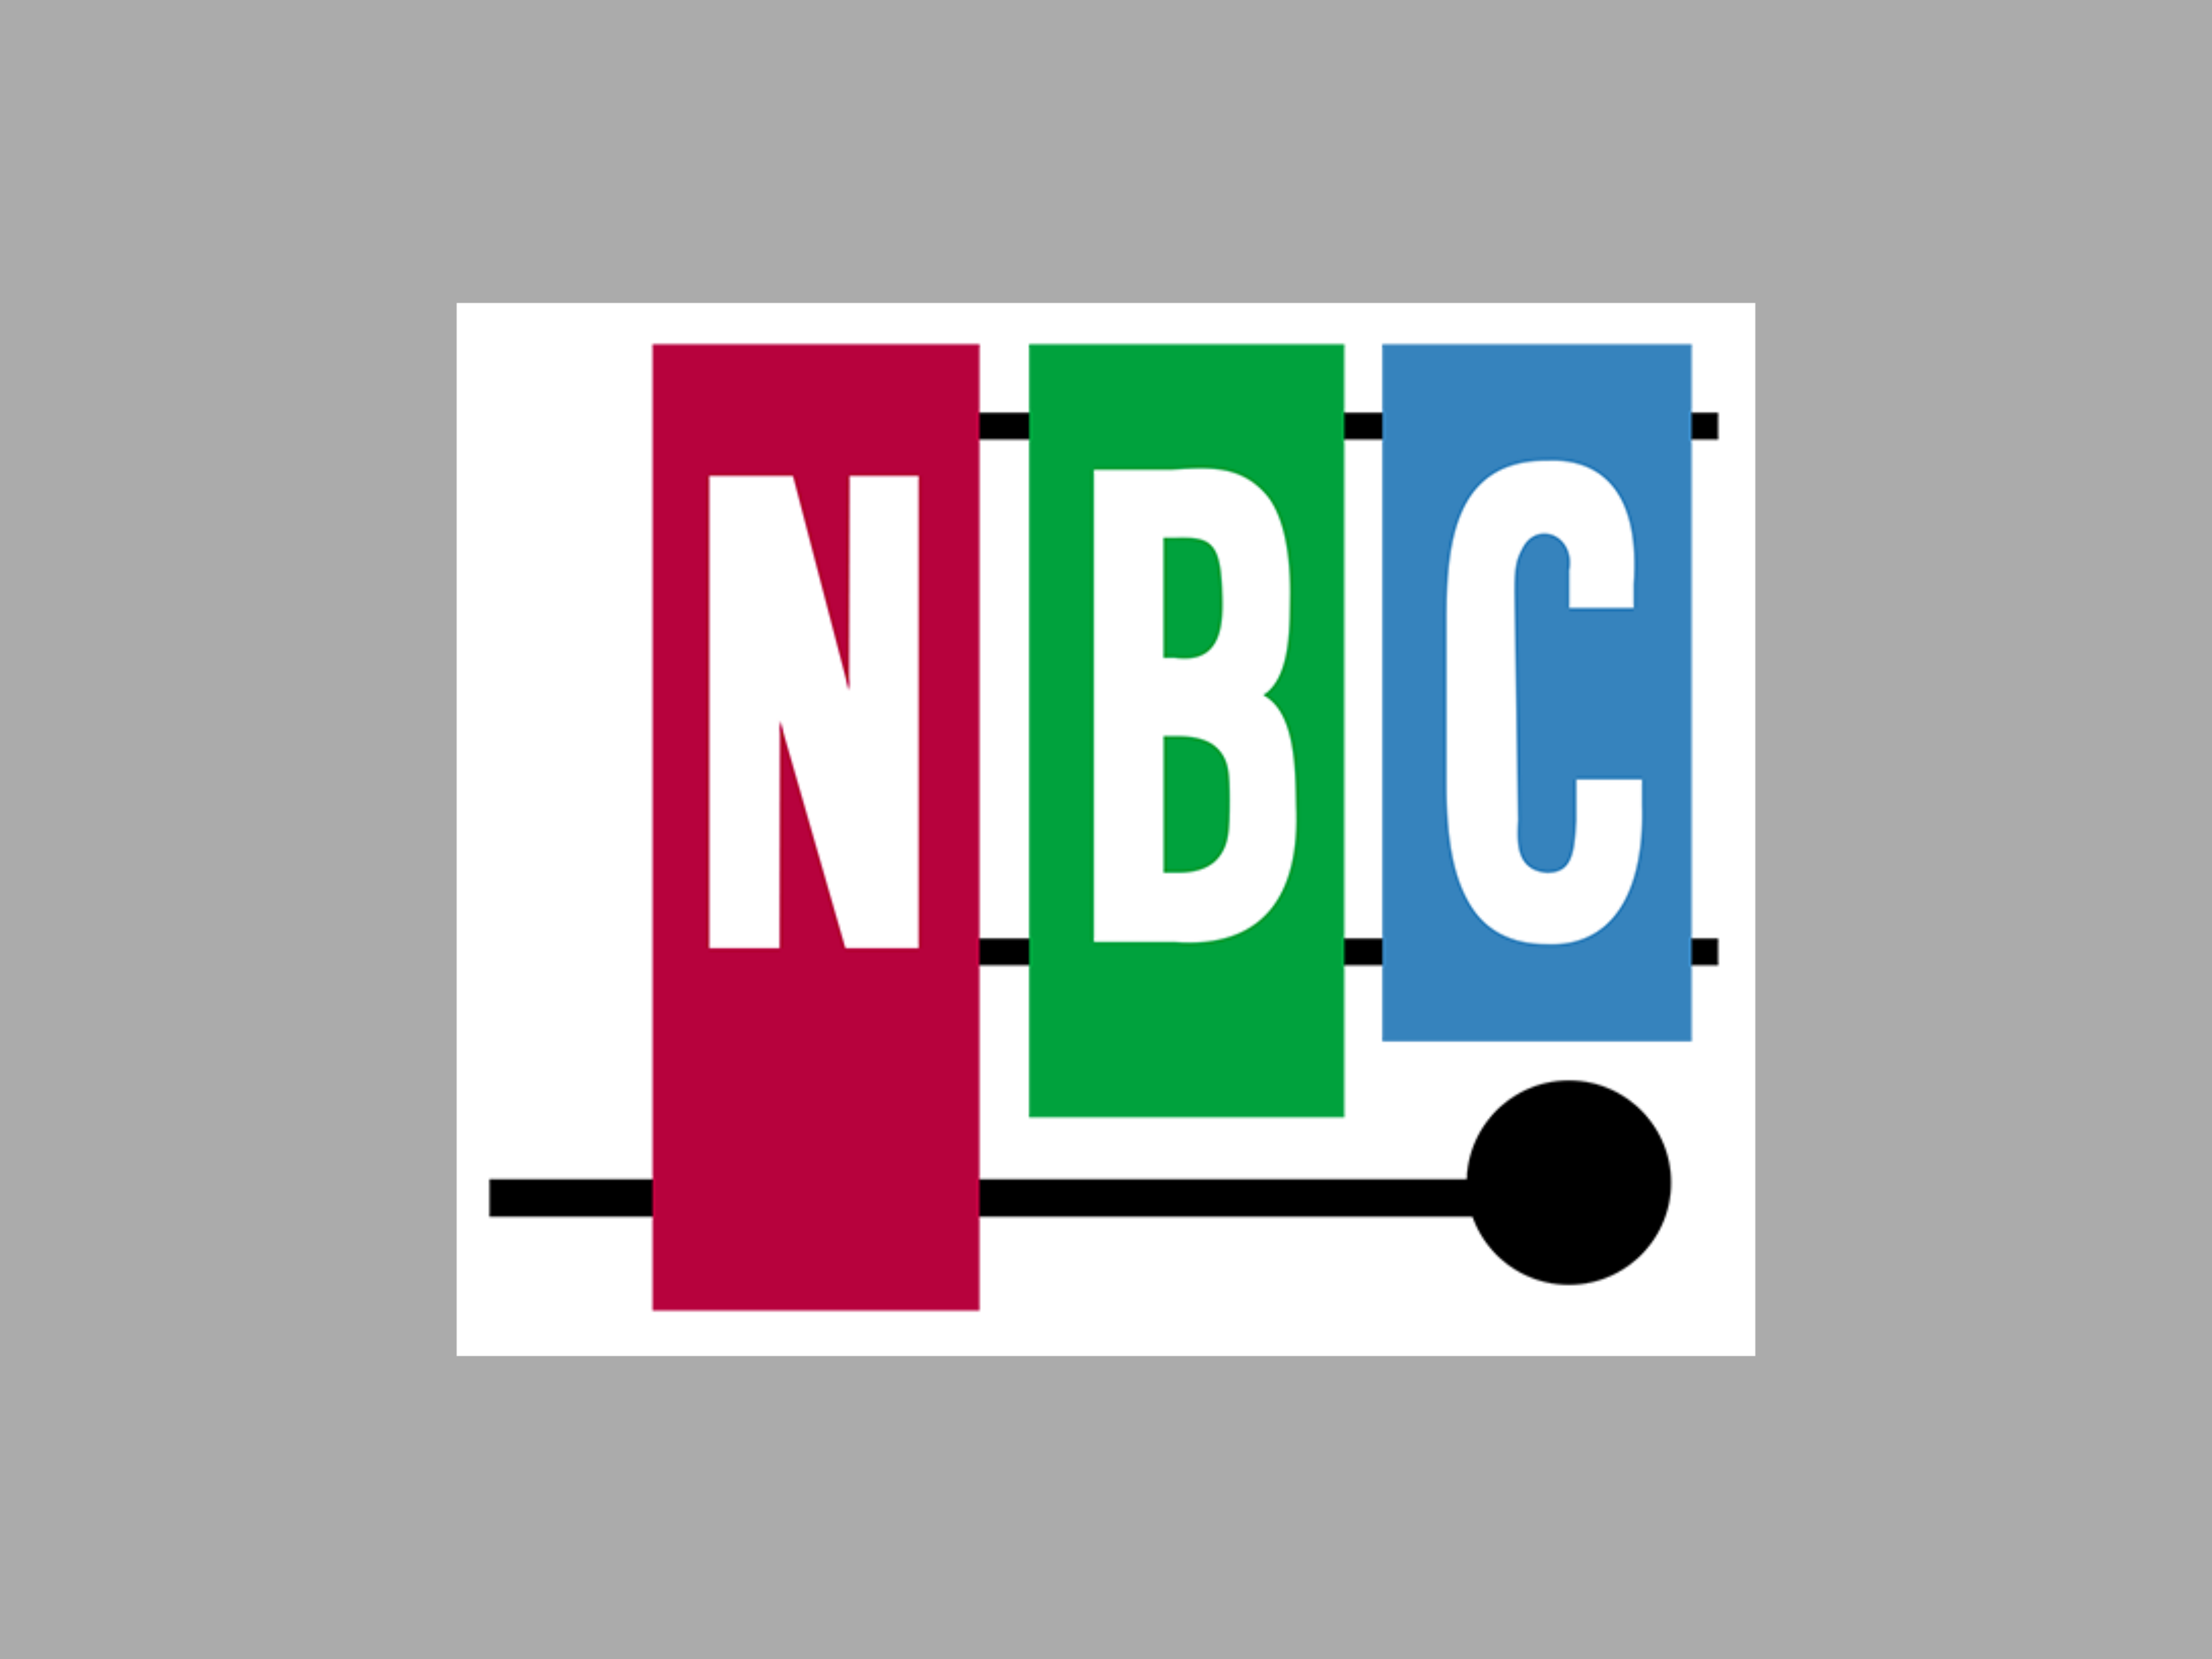 A Logo Of A Television Company